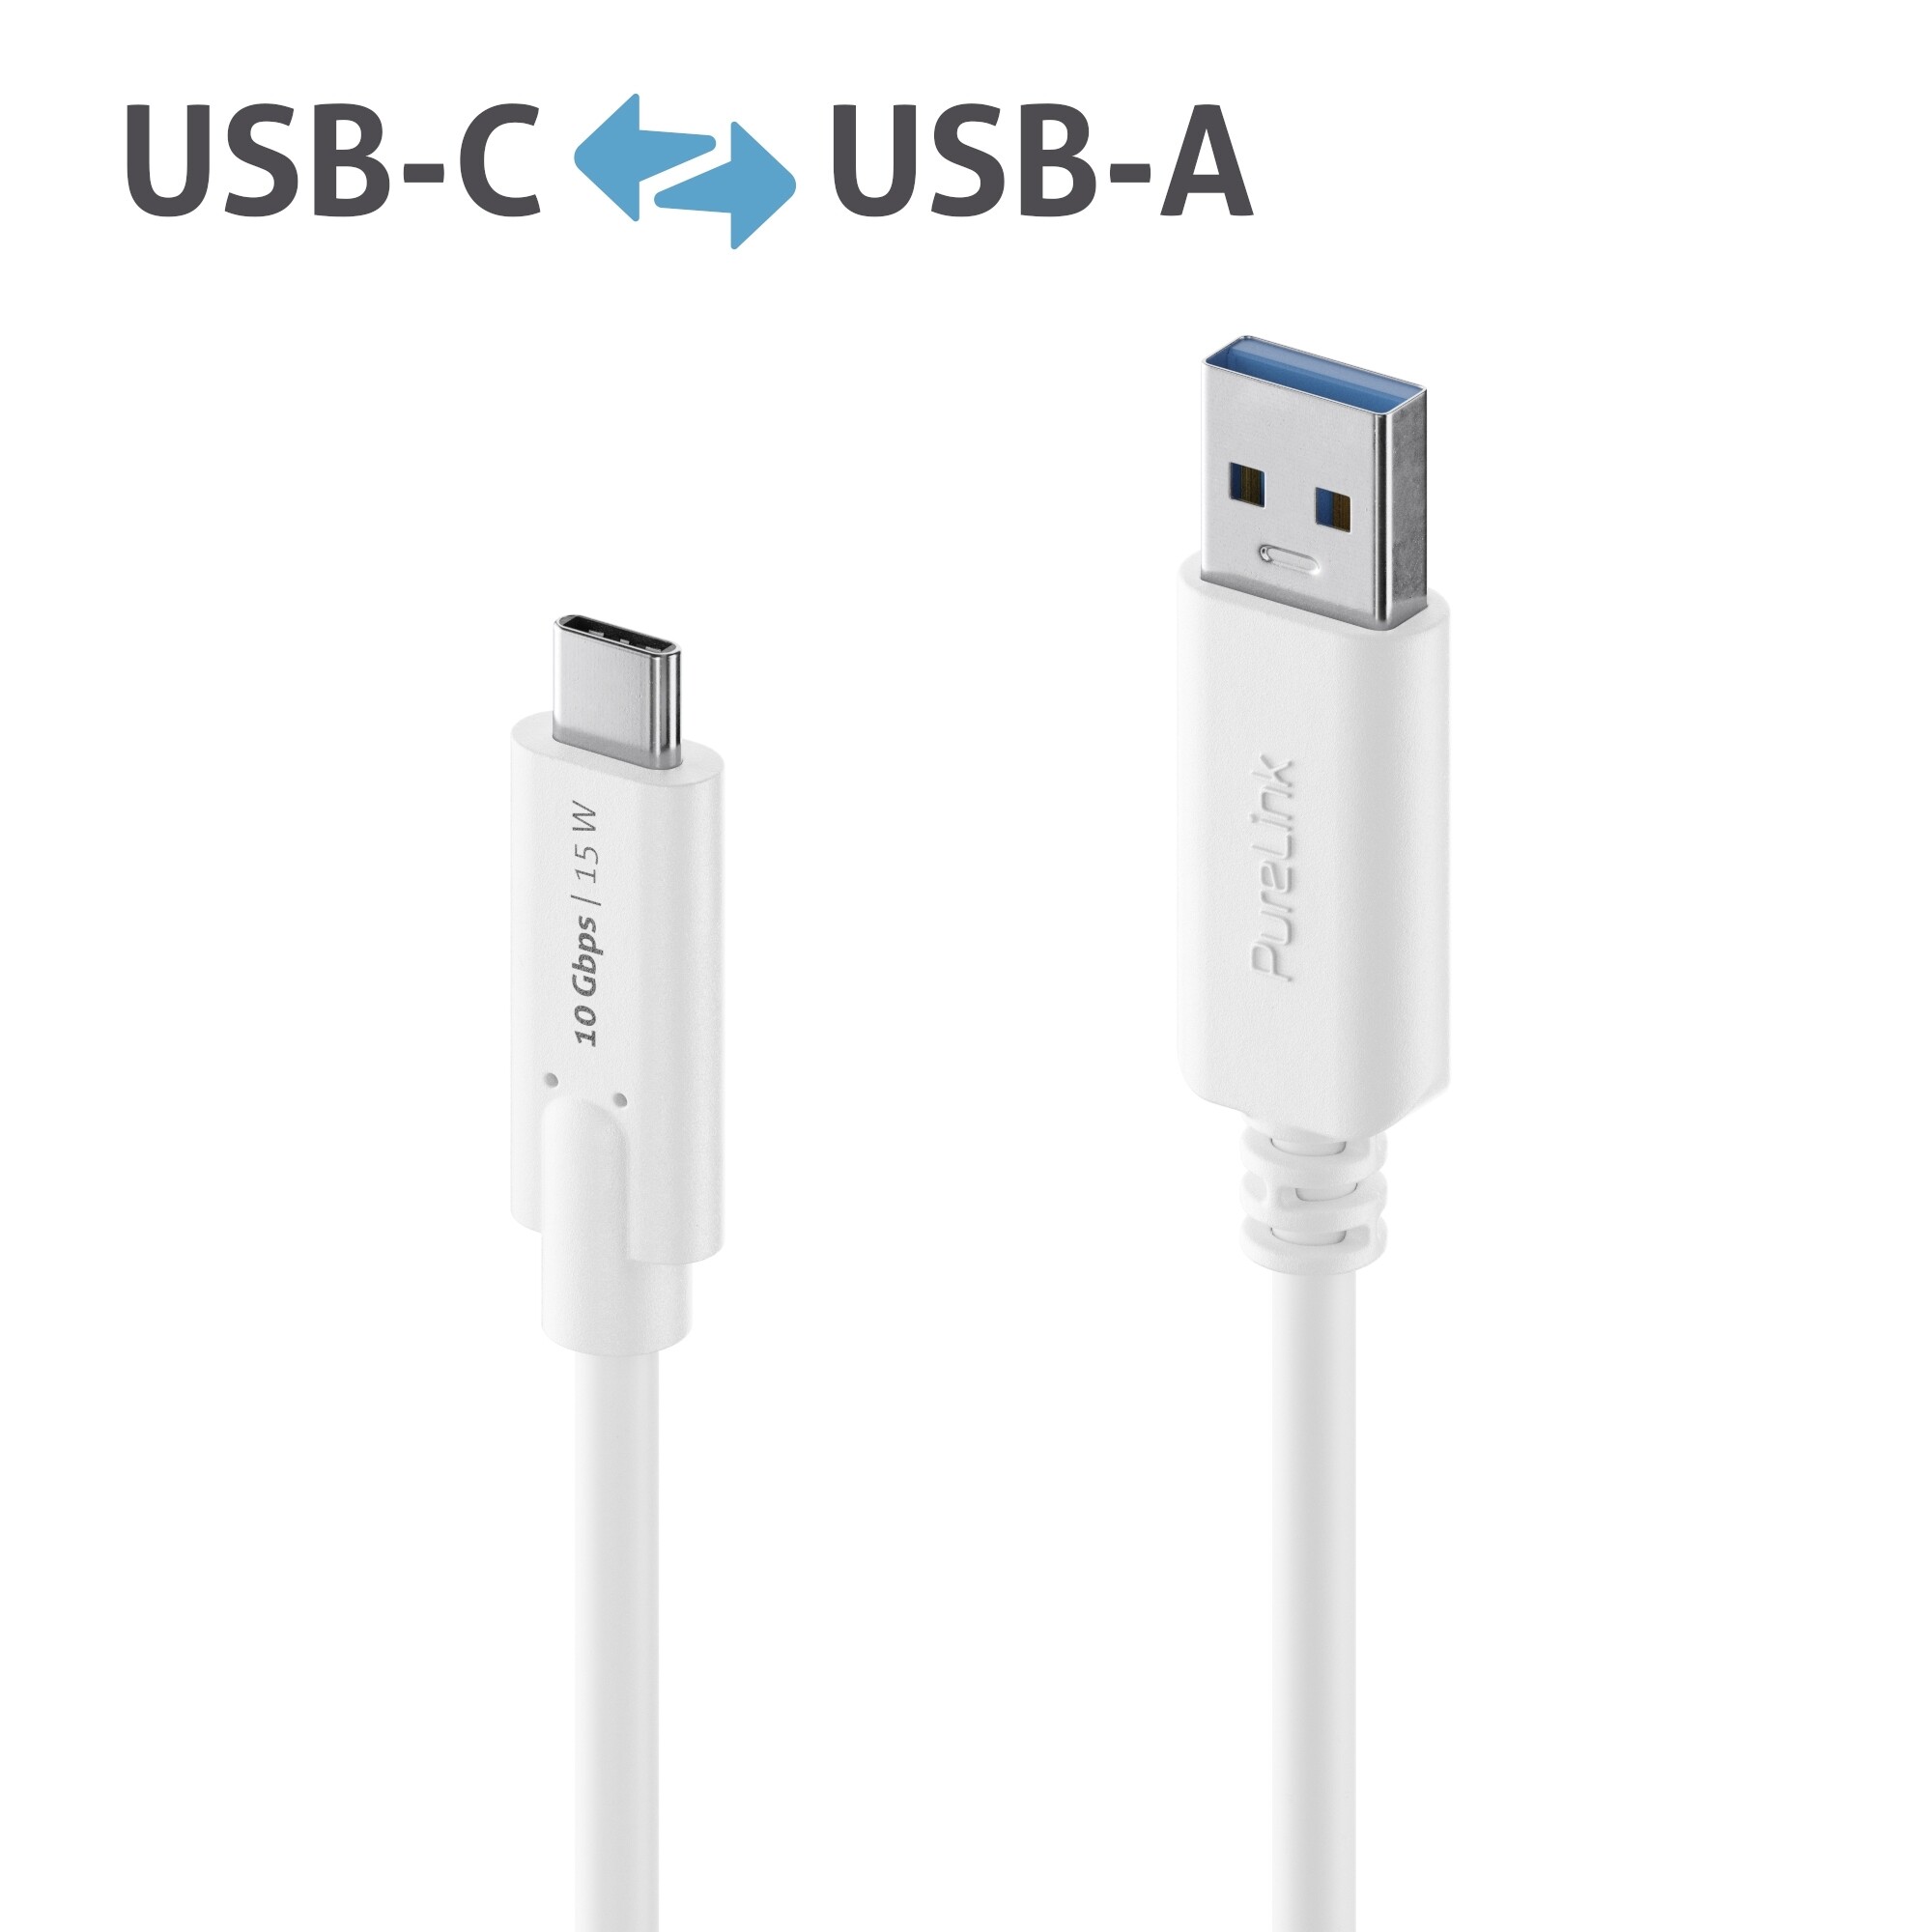 Purelink-IS2610-005-USB-C-auf-USB-A-Gen-2-Kabel-0-5m-weiss